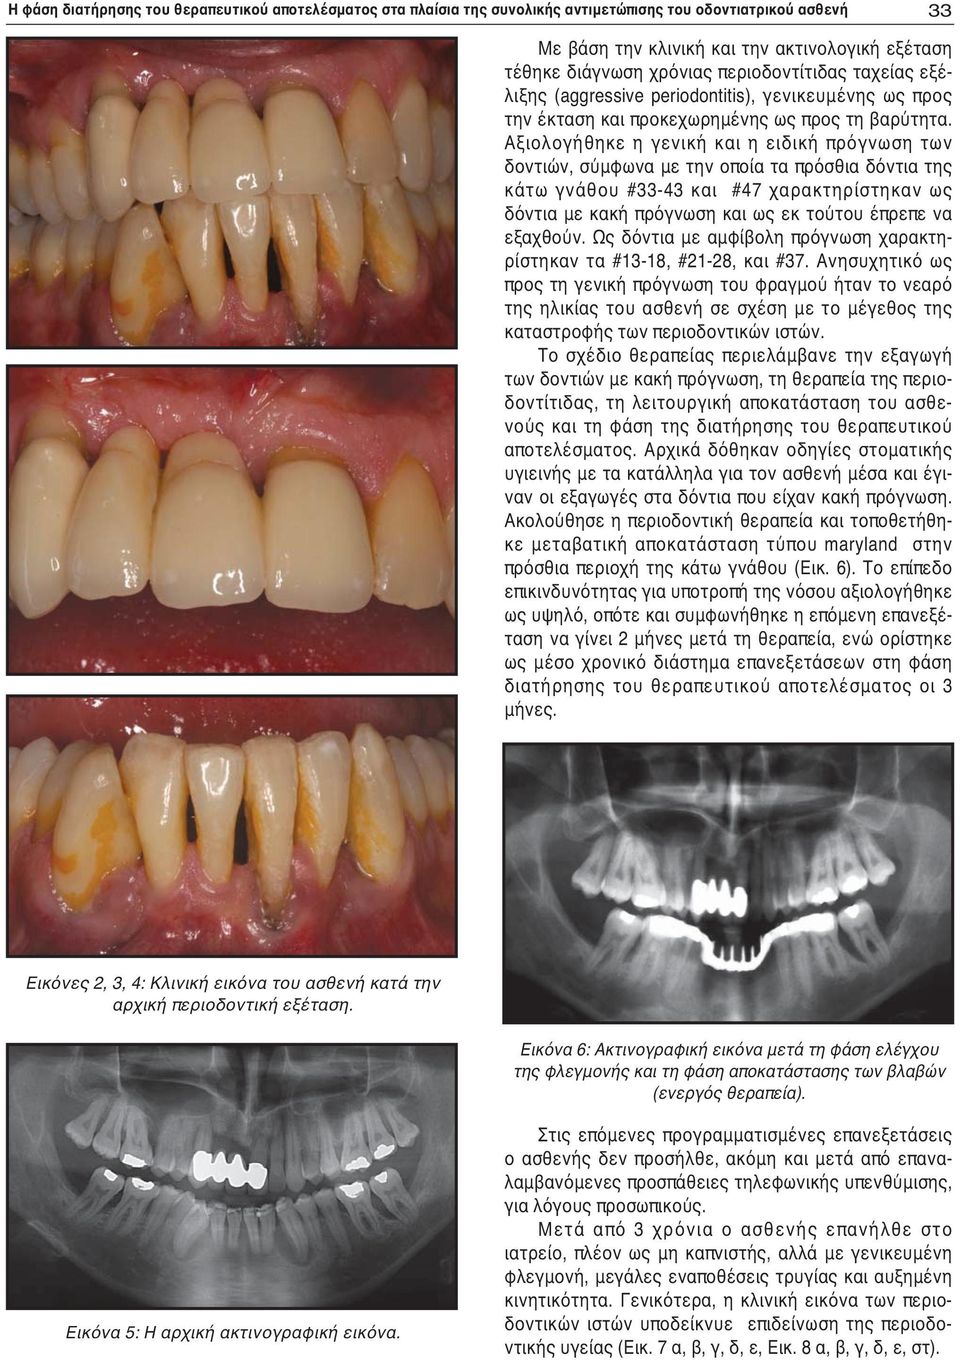 Αξιολογήθηκε η γενική και η ειδική πρόγνωση των δοντιών, σύμφωνα με την οποία τα πρόσθια δόντια της κάτω γνάθου #33-43 και #47 χαρακτηρίστηκαν ως δόντια με κακή πρόγνωση και ως εκ τούτου έπρεπε να